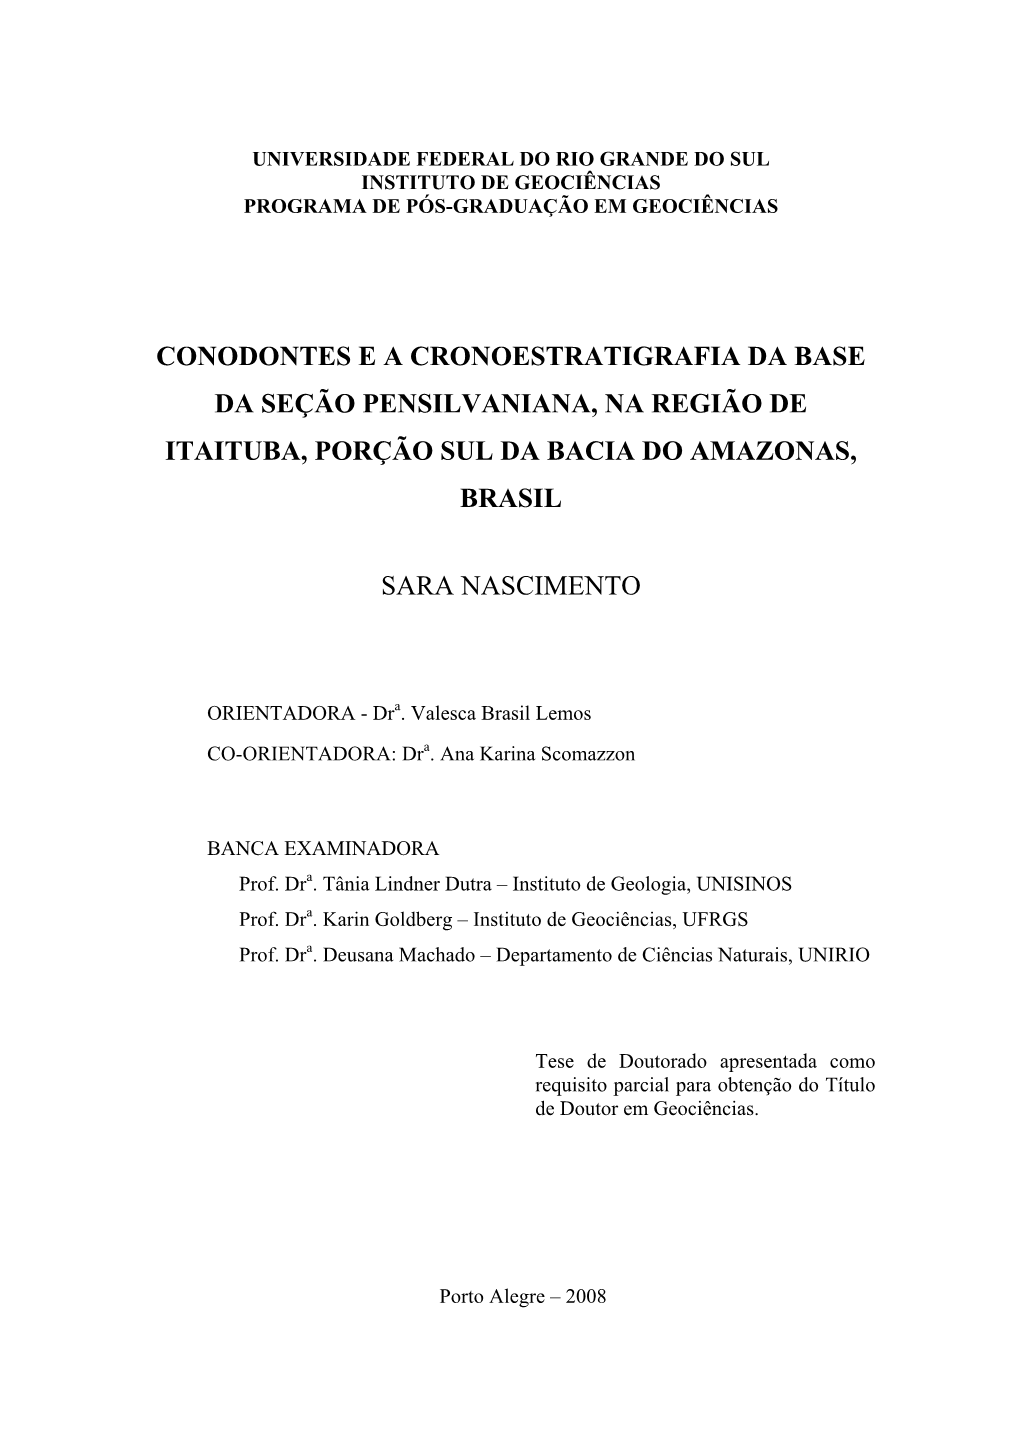 Conodontes E a Cronoestratigrafia Da Base Da Seção Pensilvaniana, Na Região De Itaituba, Porção Sul Da Bacia Do Amazonas, Brasil